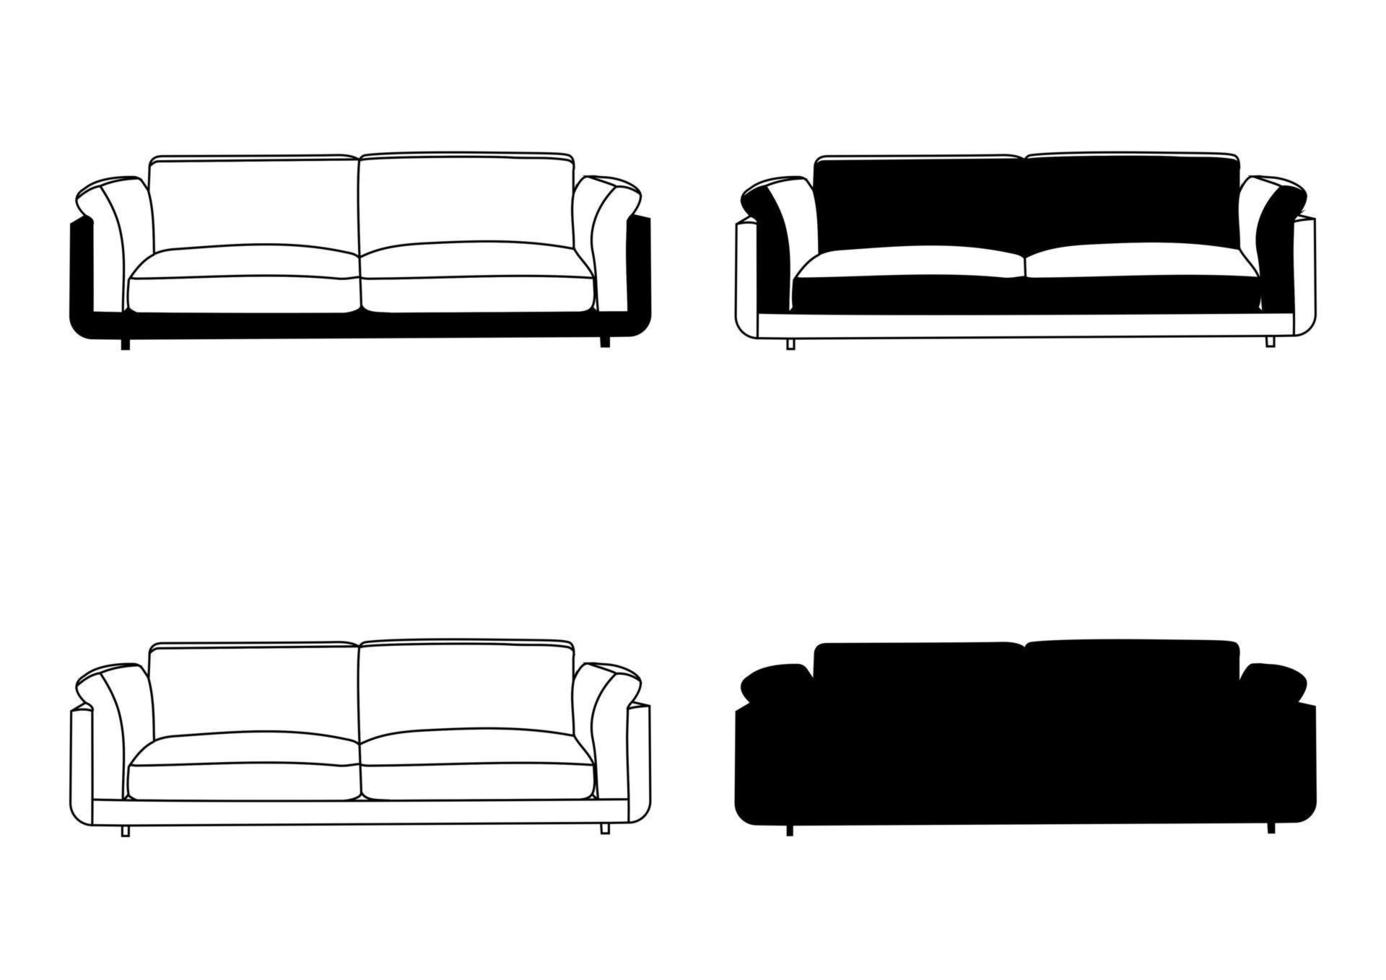 ensemble, contour de la silhouette, canapé, canapé, canapé, lit de repos, chaise longue, pouf. objet, modèle de meuble. vecteur